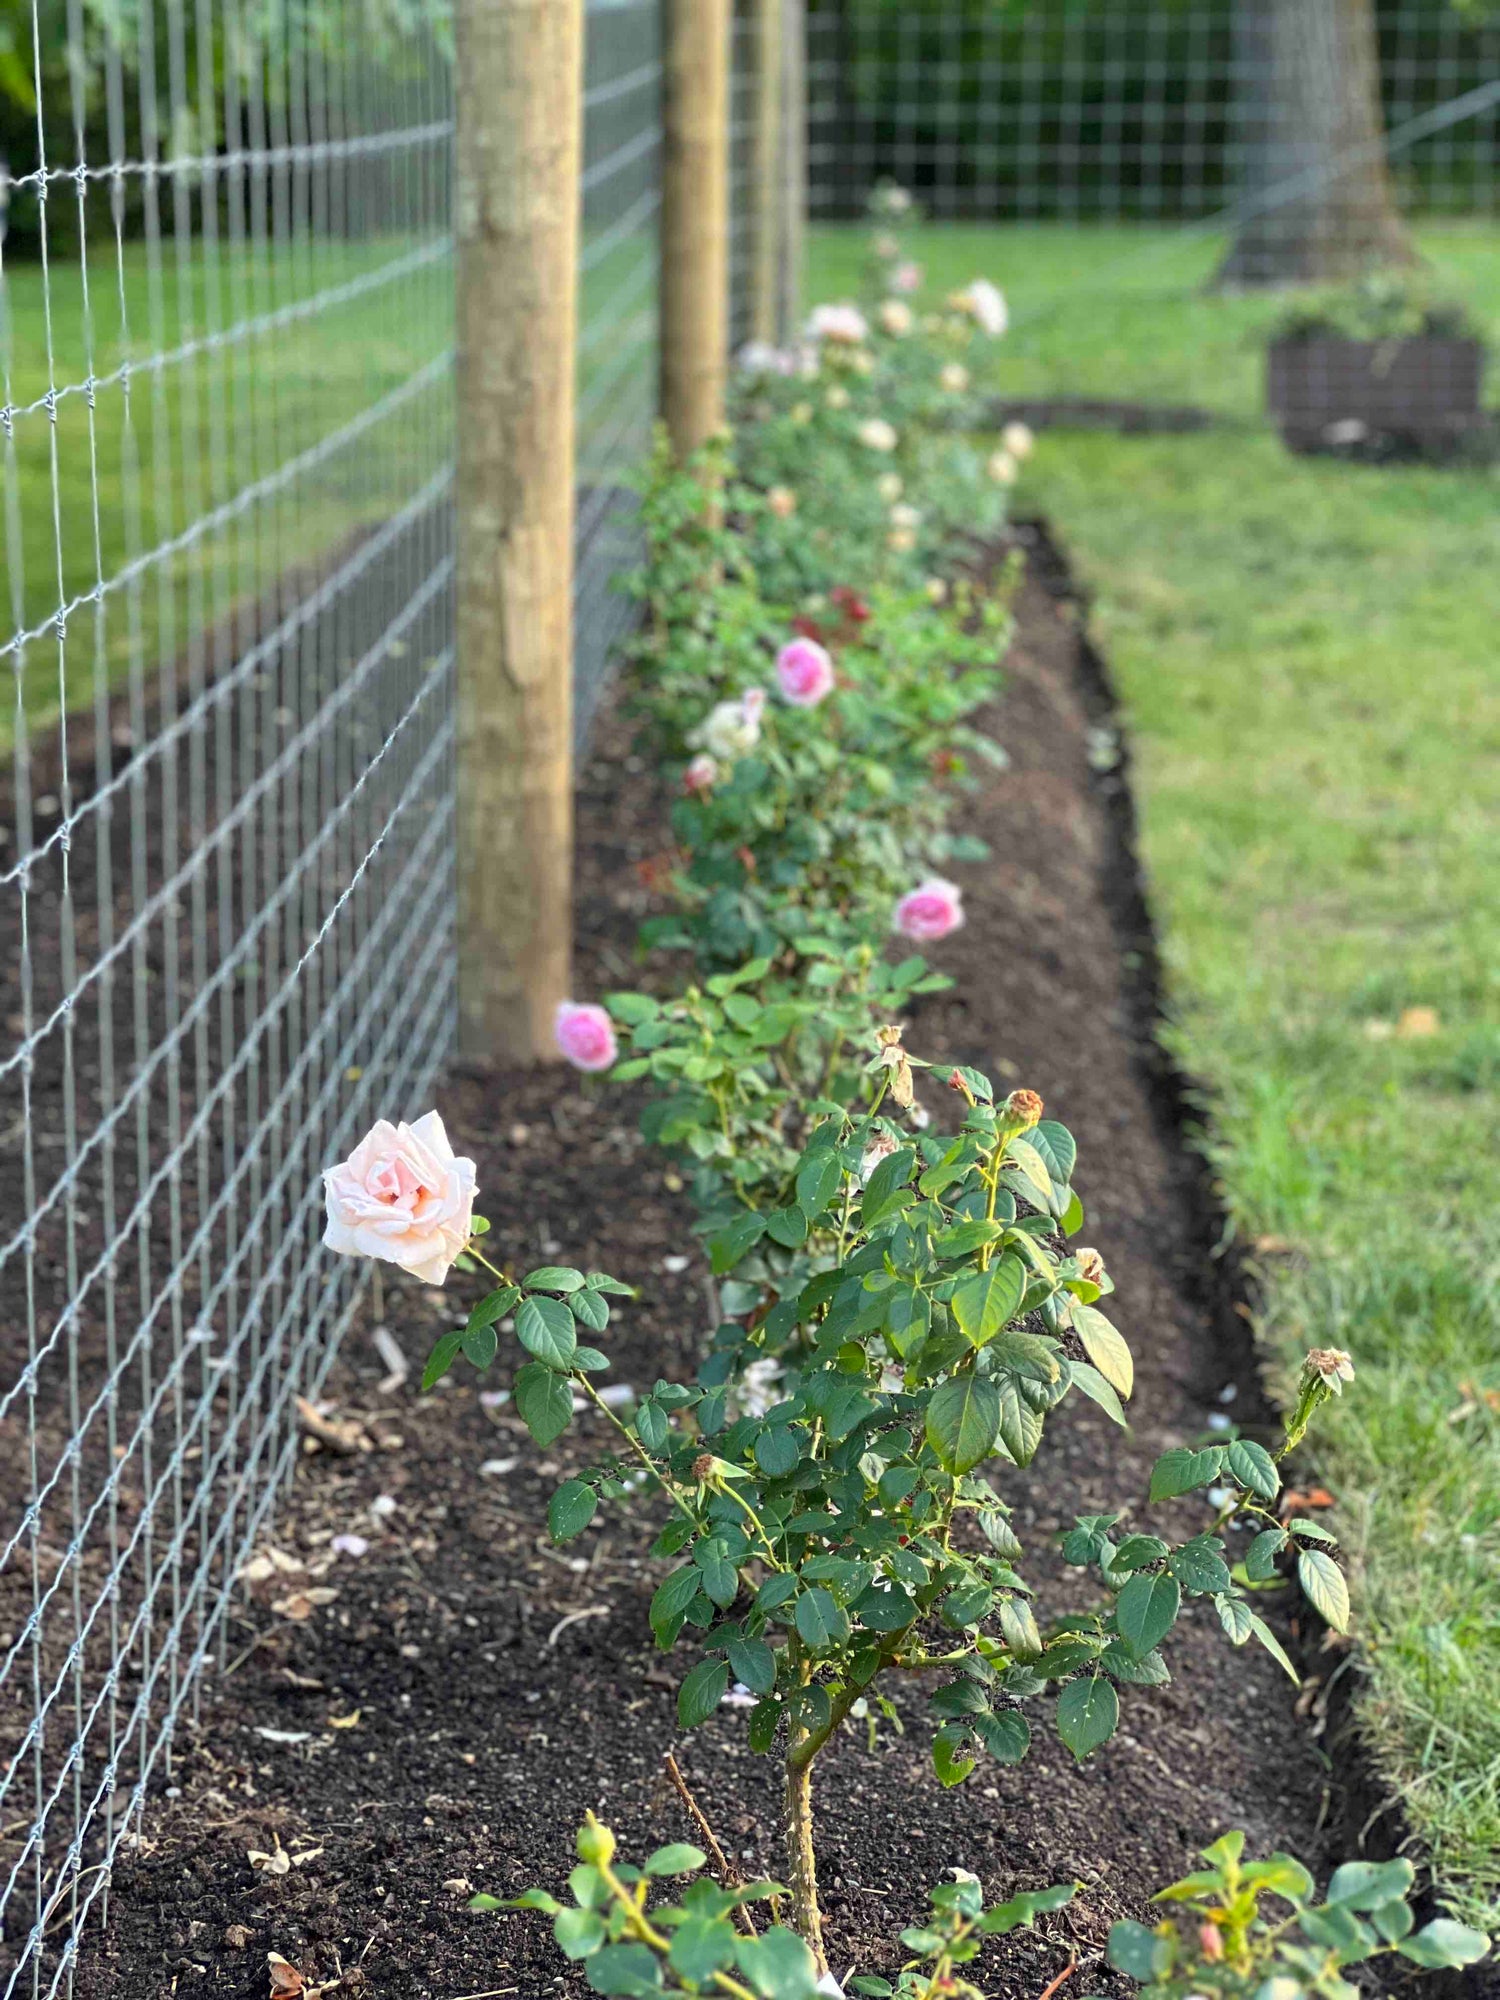 New Hope Flora Cottage rose garden bed